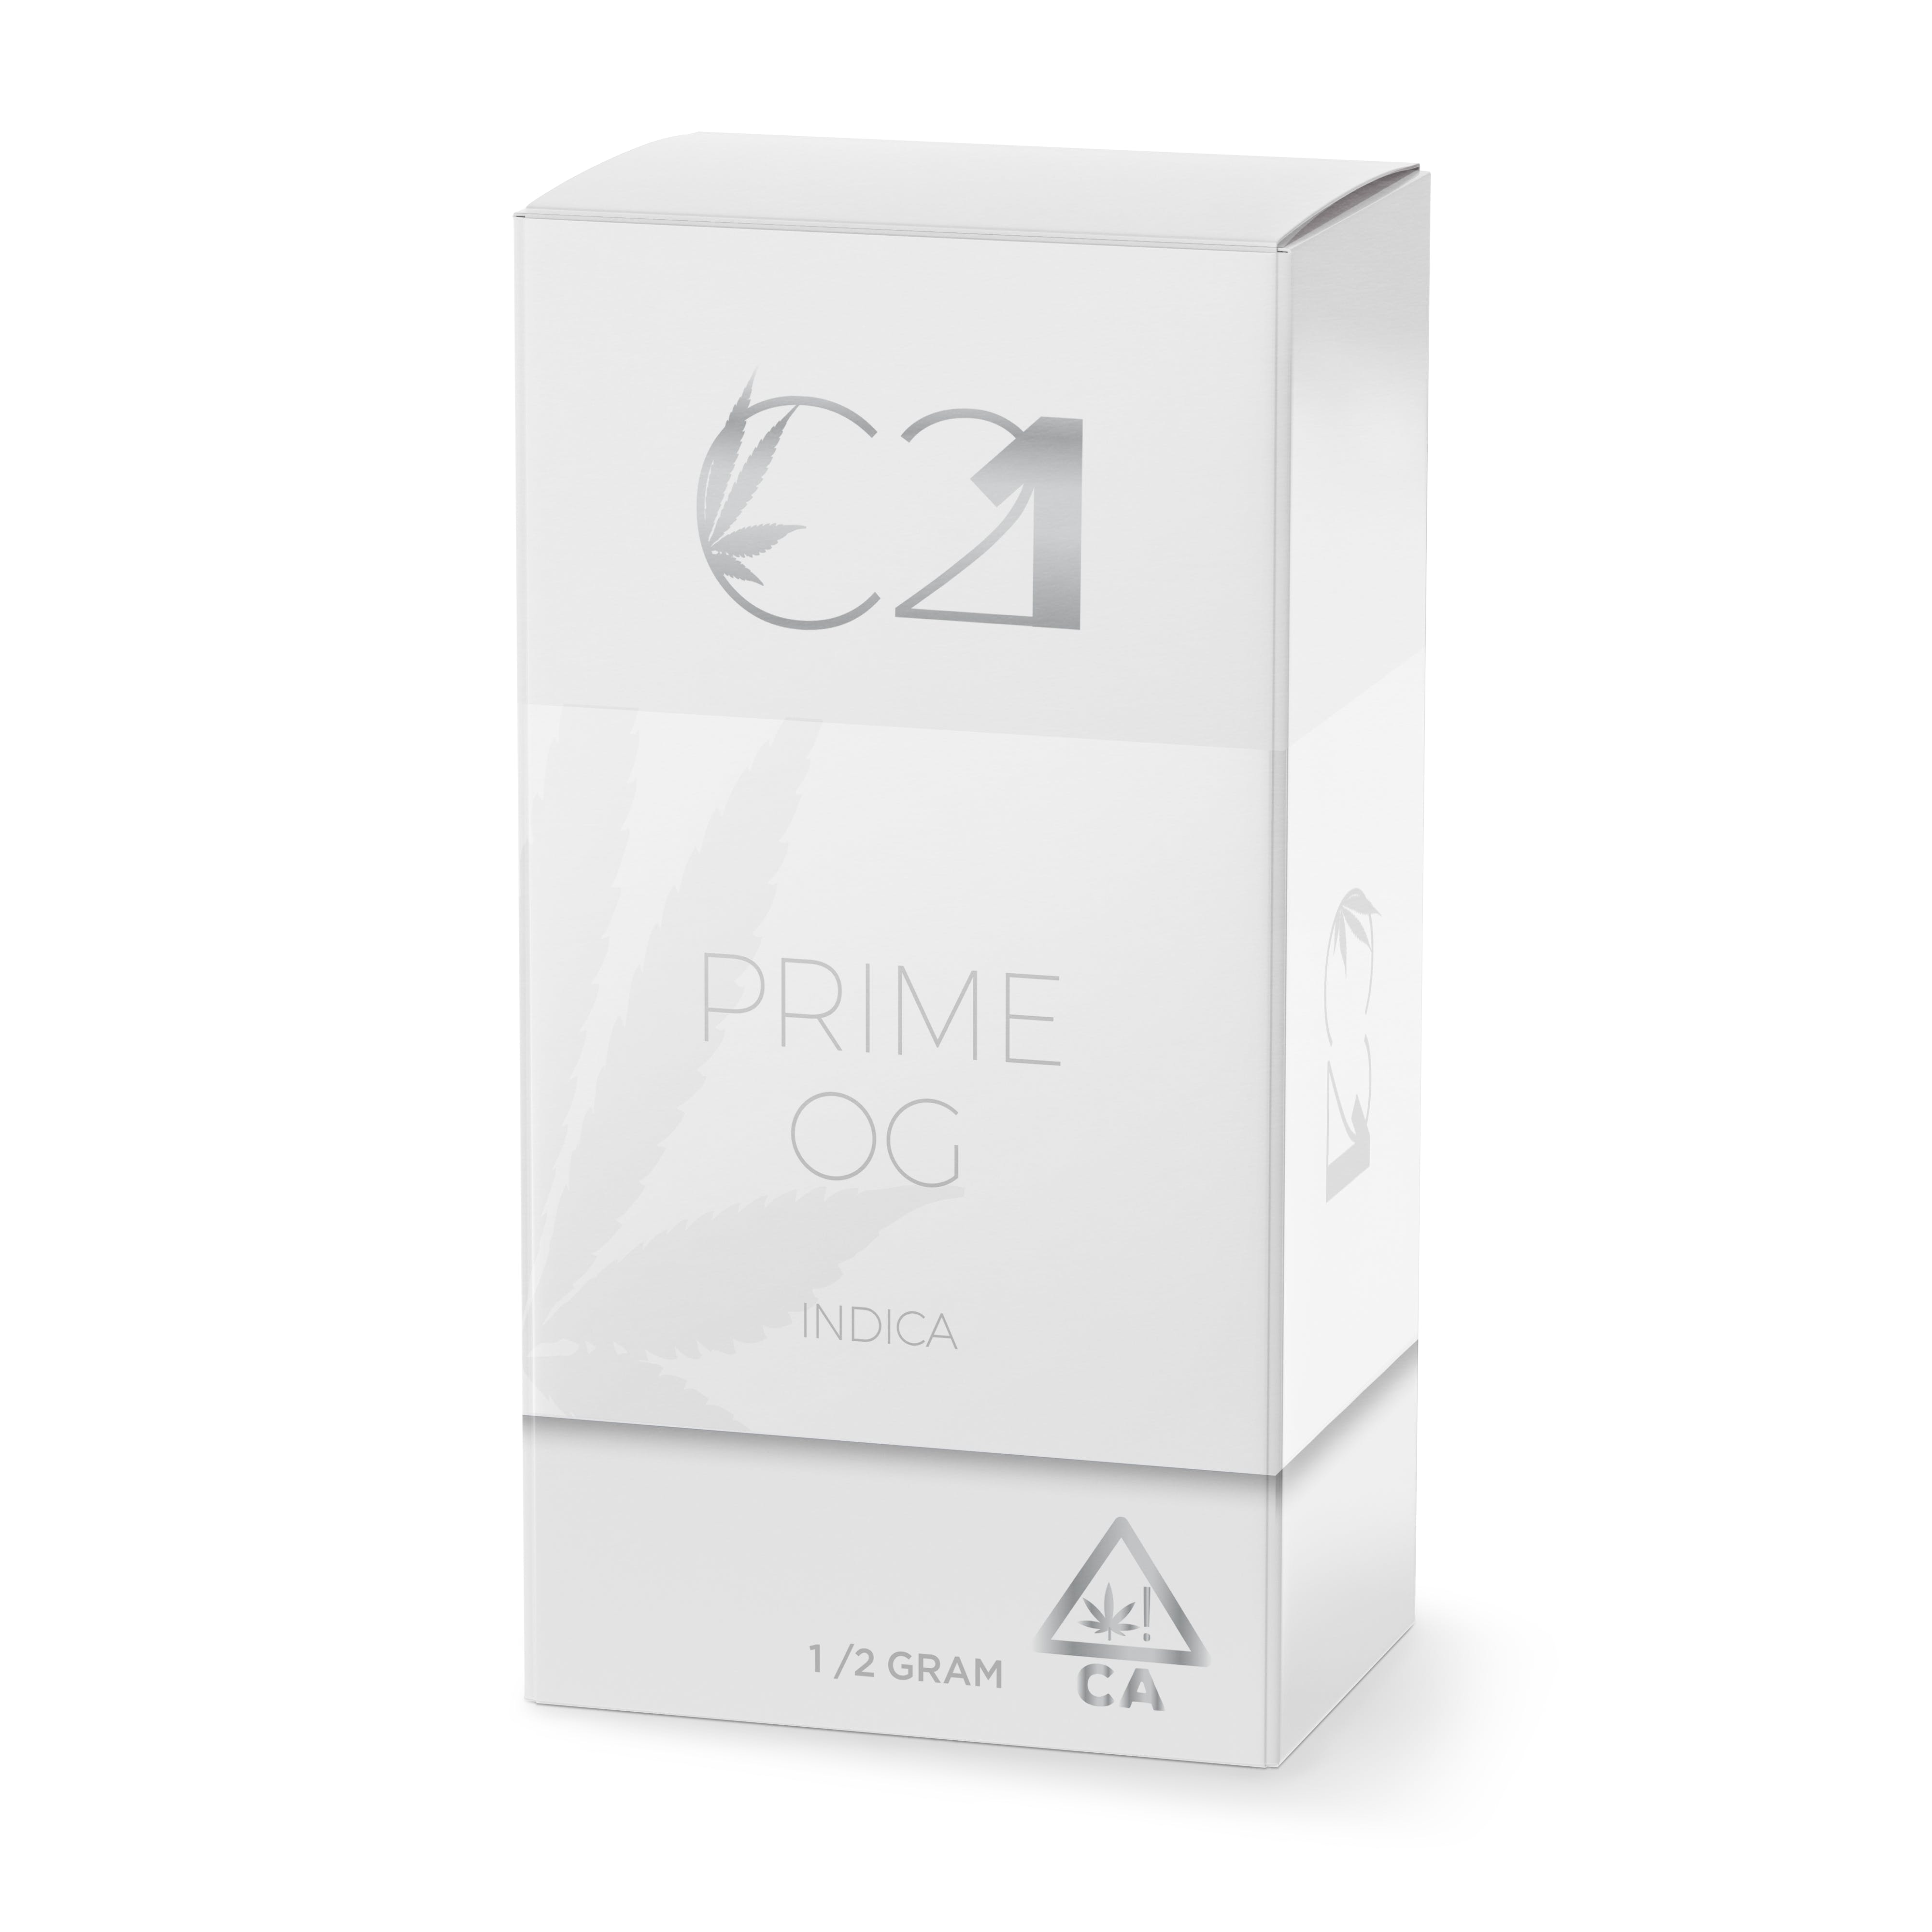 C21 – Prime OG – Indica